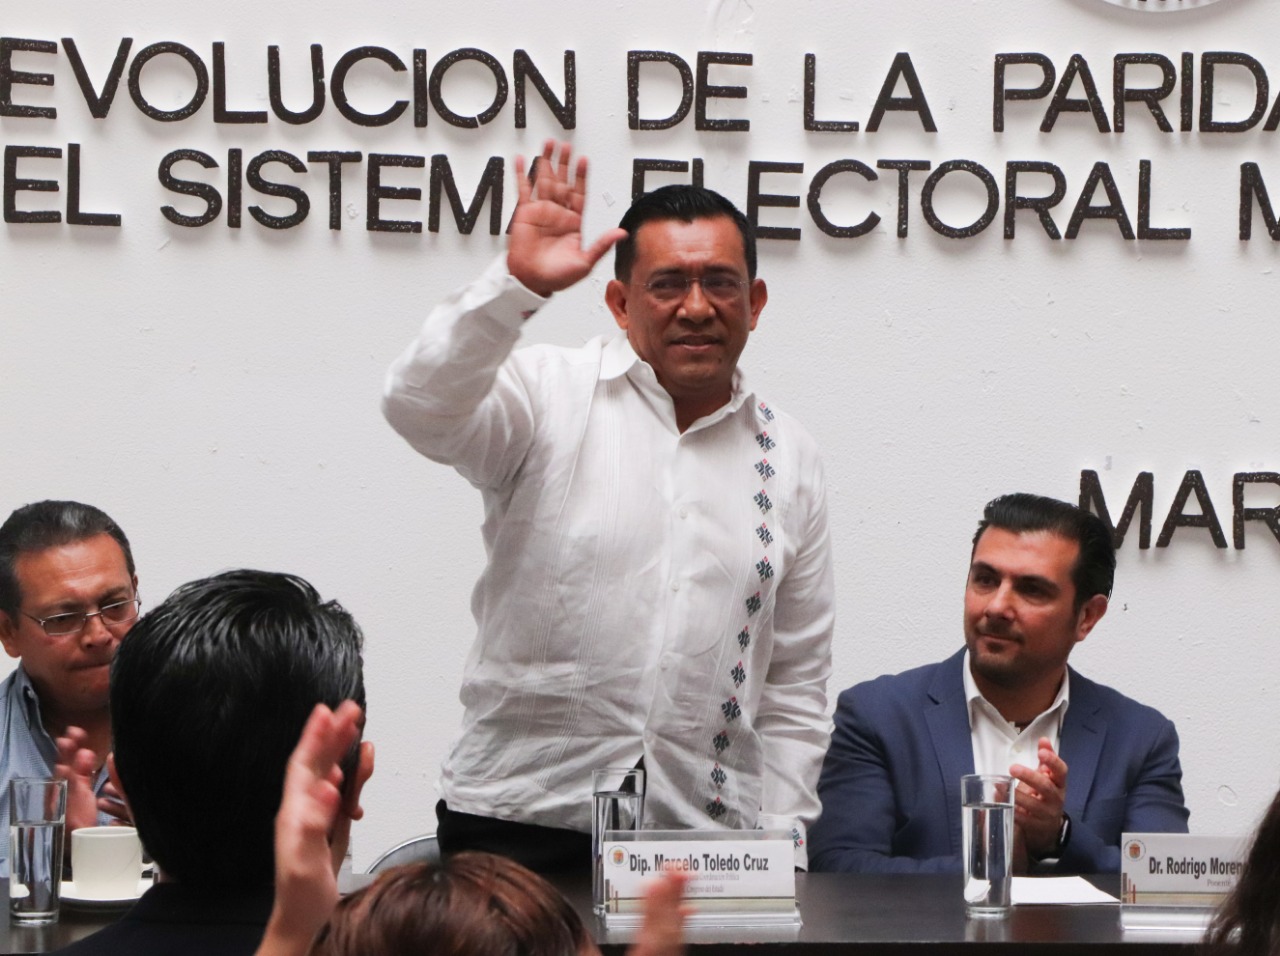 Presentan en Congreso del Estado: “Evolución de la Paridad de Género, en el Sistema Electoral Mexicano”